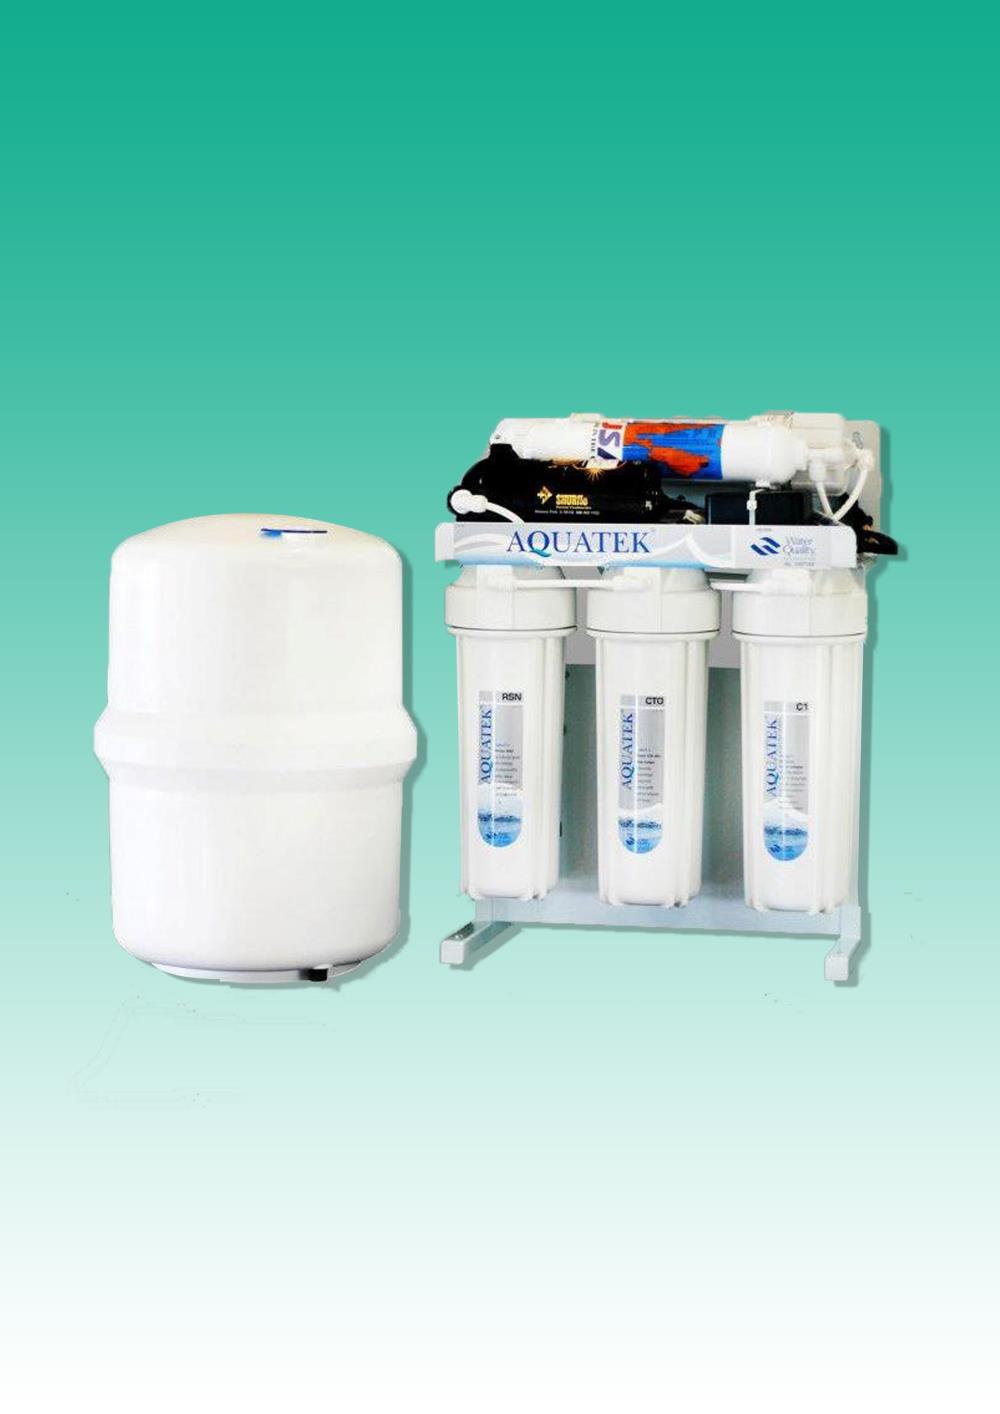 เครื่องกรองน้ำ AQUATEK GOLD (USA) 75 GPD,เครื่องกรองน้ำ,water filter,AQUATEK,Machinery and Process Equipment/Filters/Water Filter